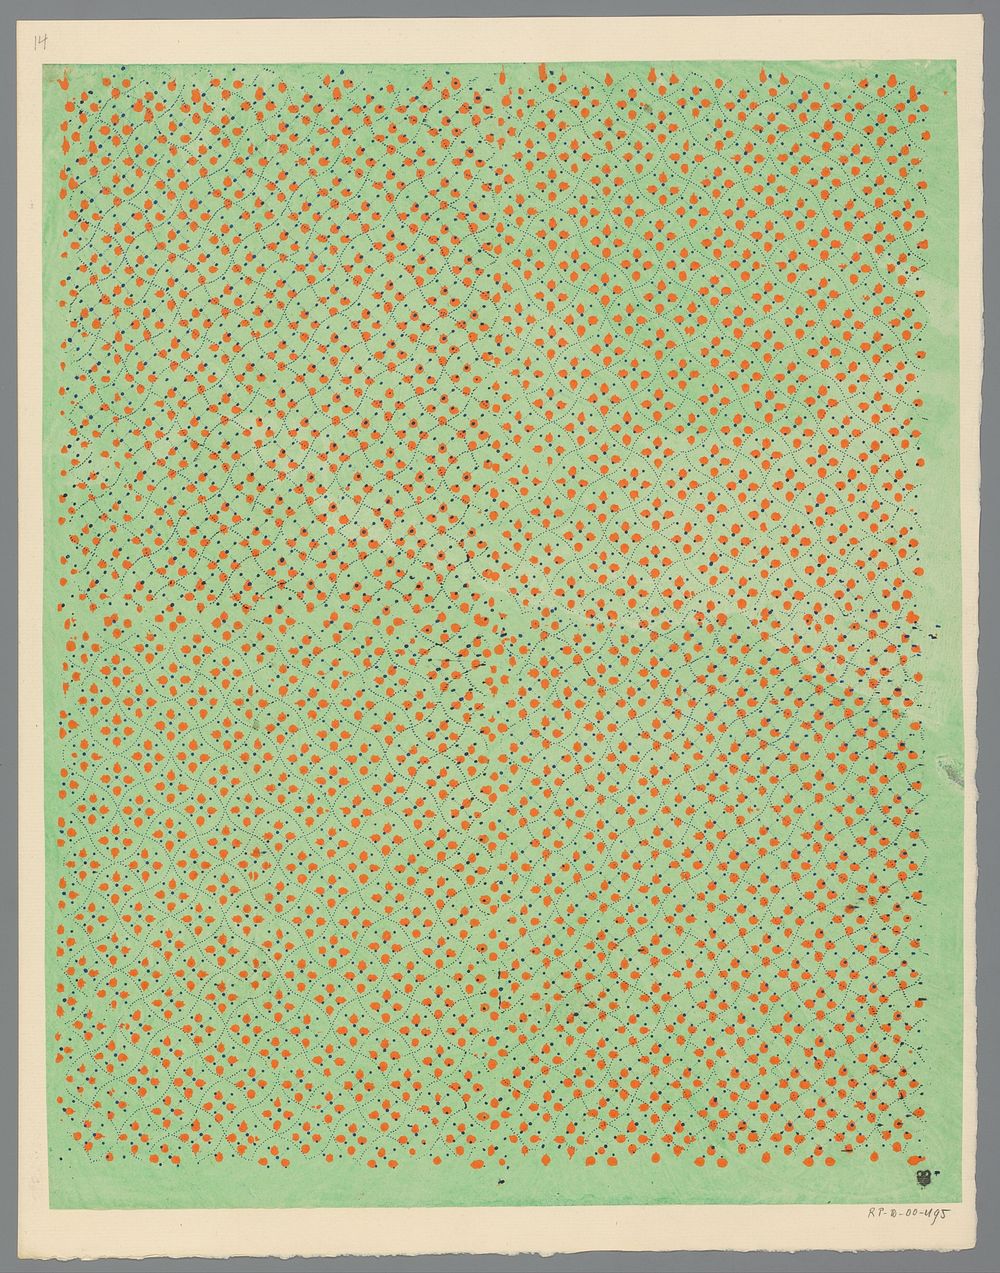 Blad met slingerend ruitpatroon van stippellijnen met bladmotief en punten als veldvulling (1800 - 1900) by anonymous